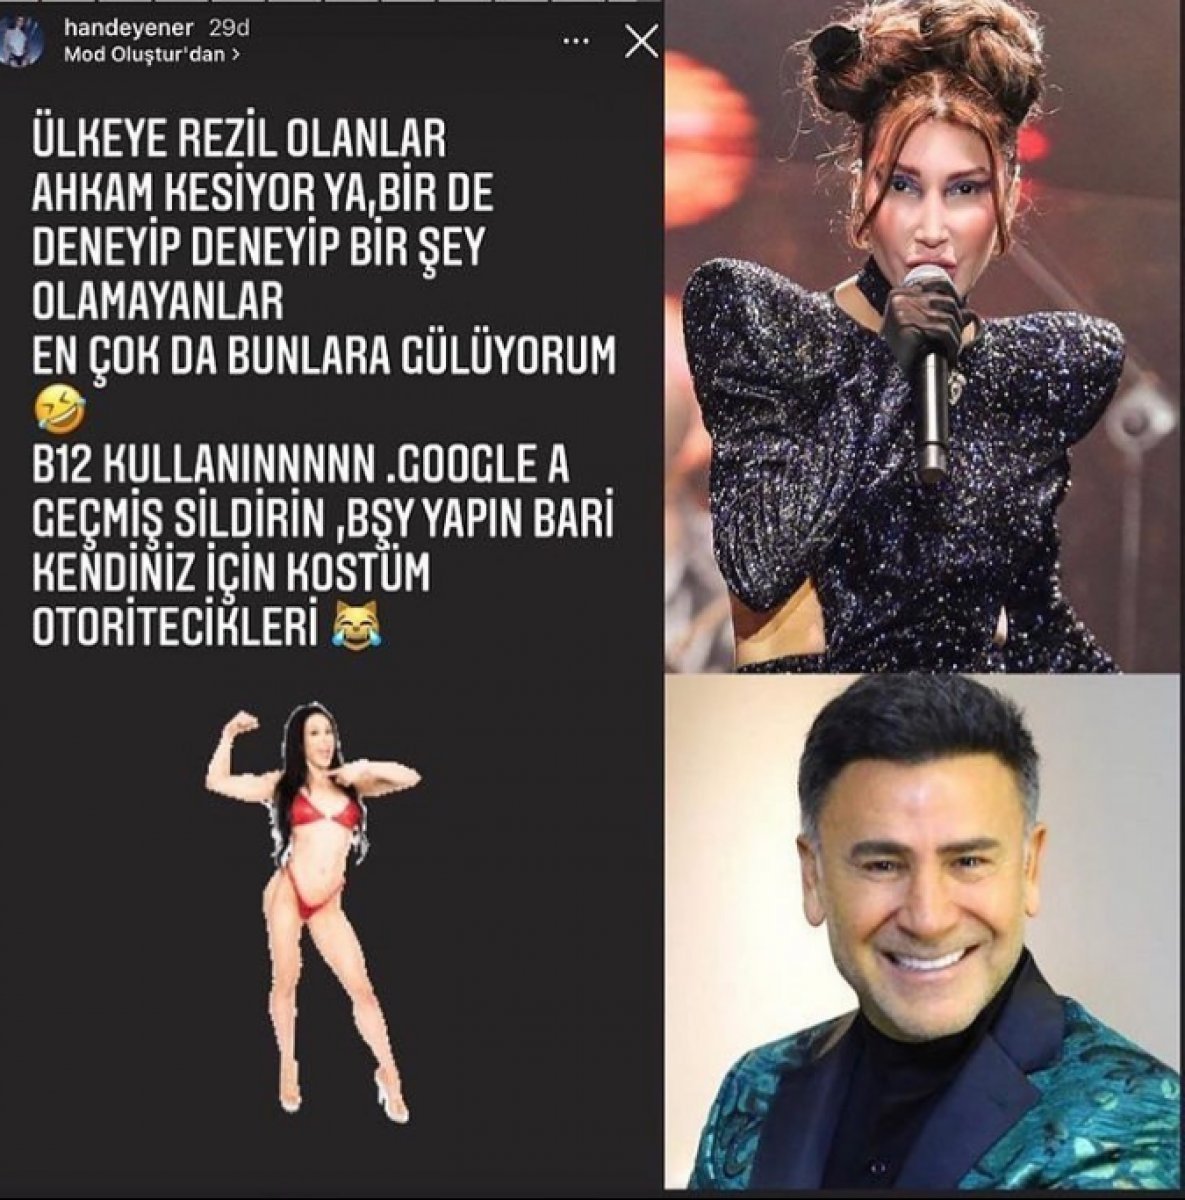 Hande Yener den İzzet Yıldızhan a cevap #3